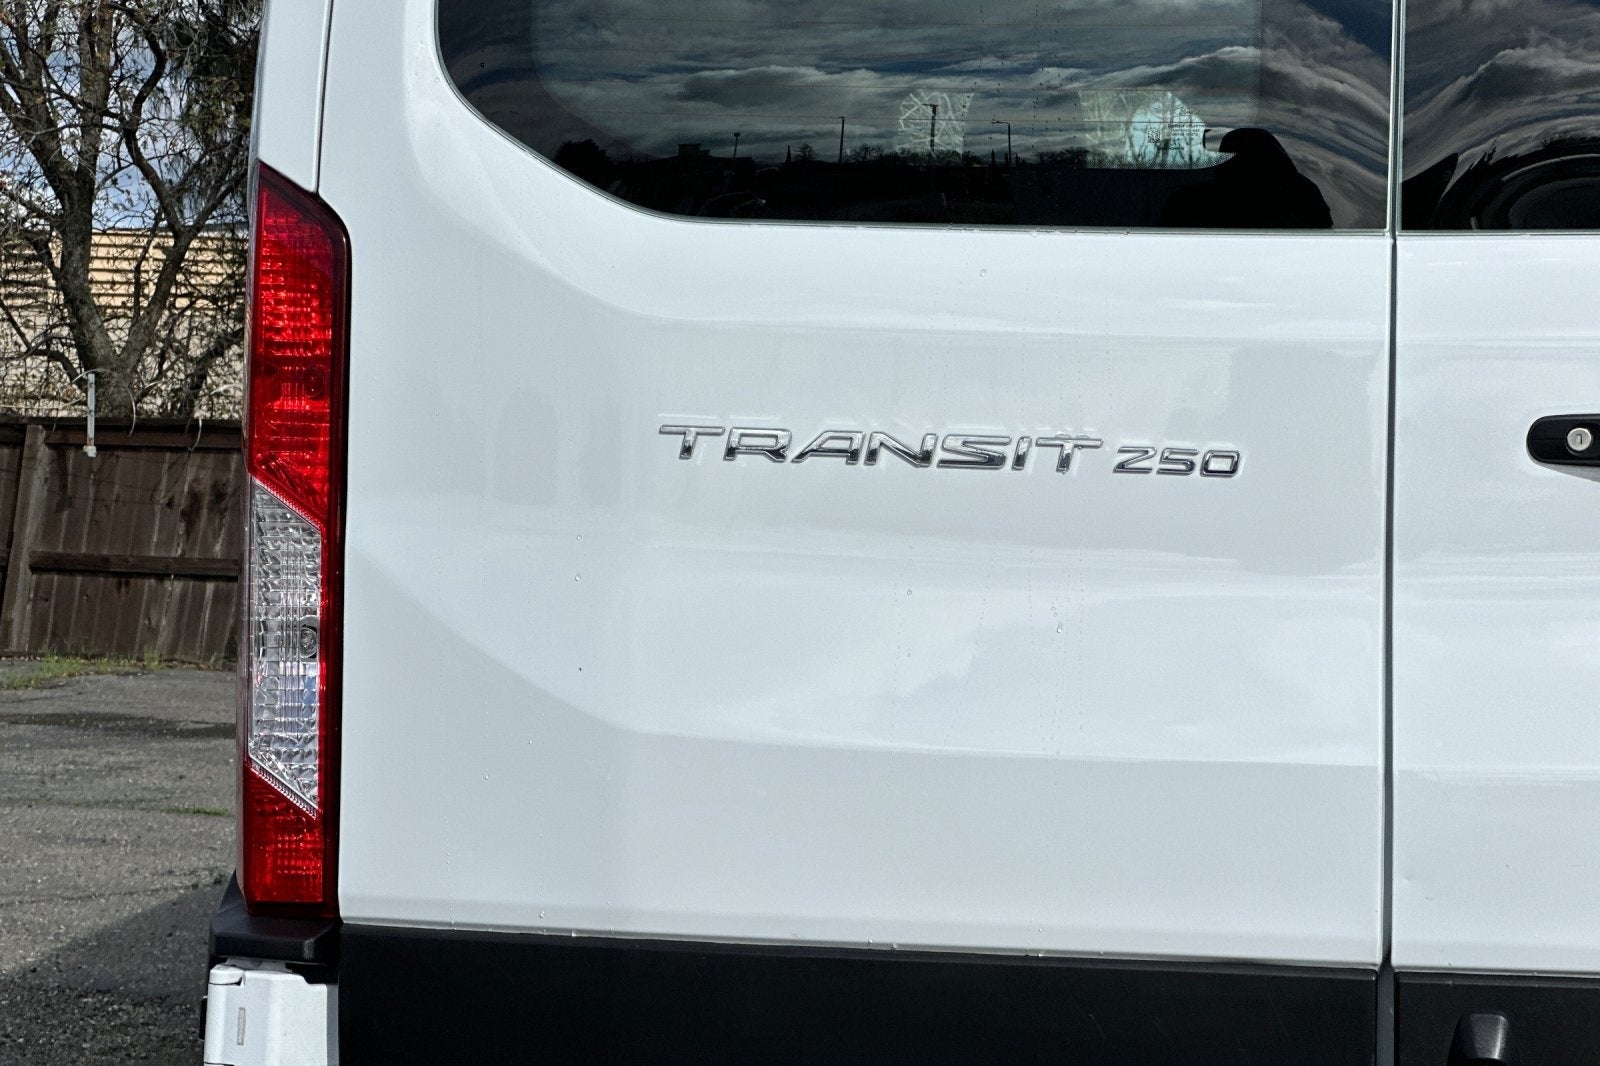 2021 Ford Transit-250 Base